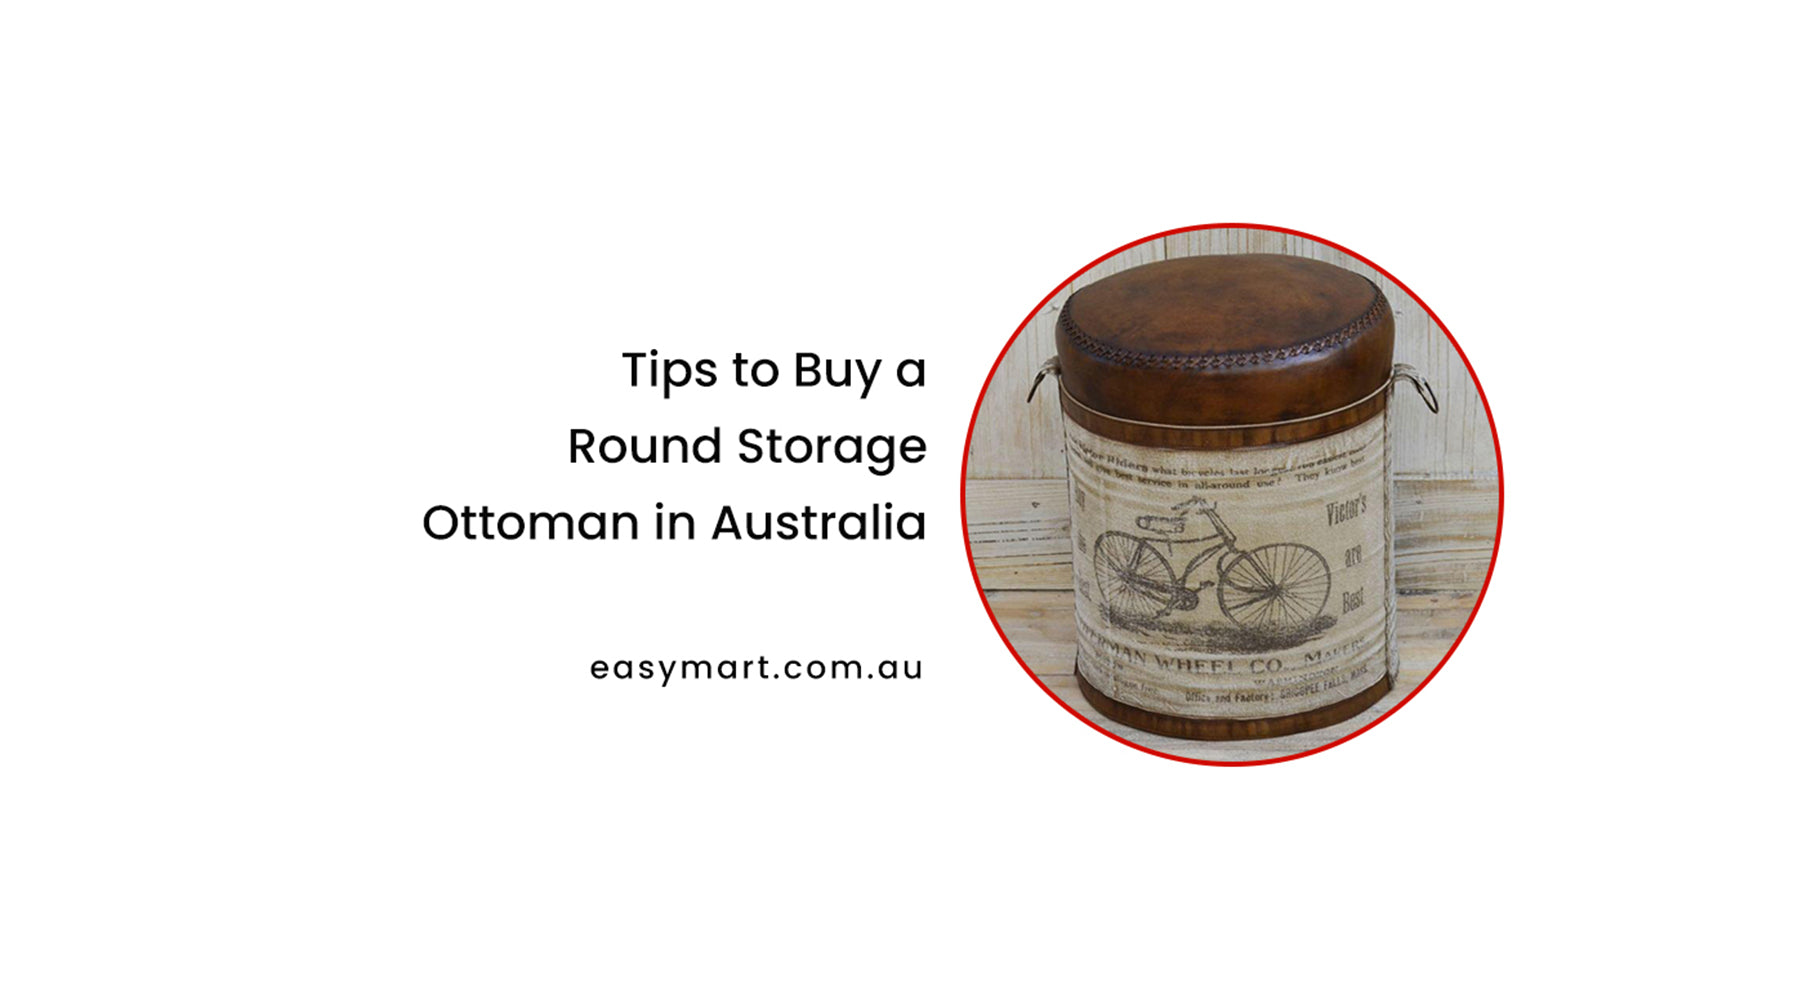 Tips to Buy a Round Storage Ottoman in Australia